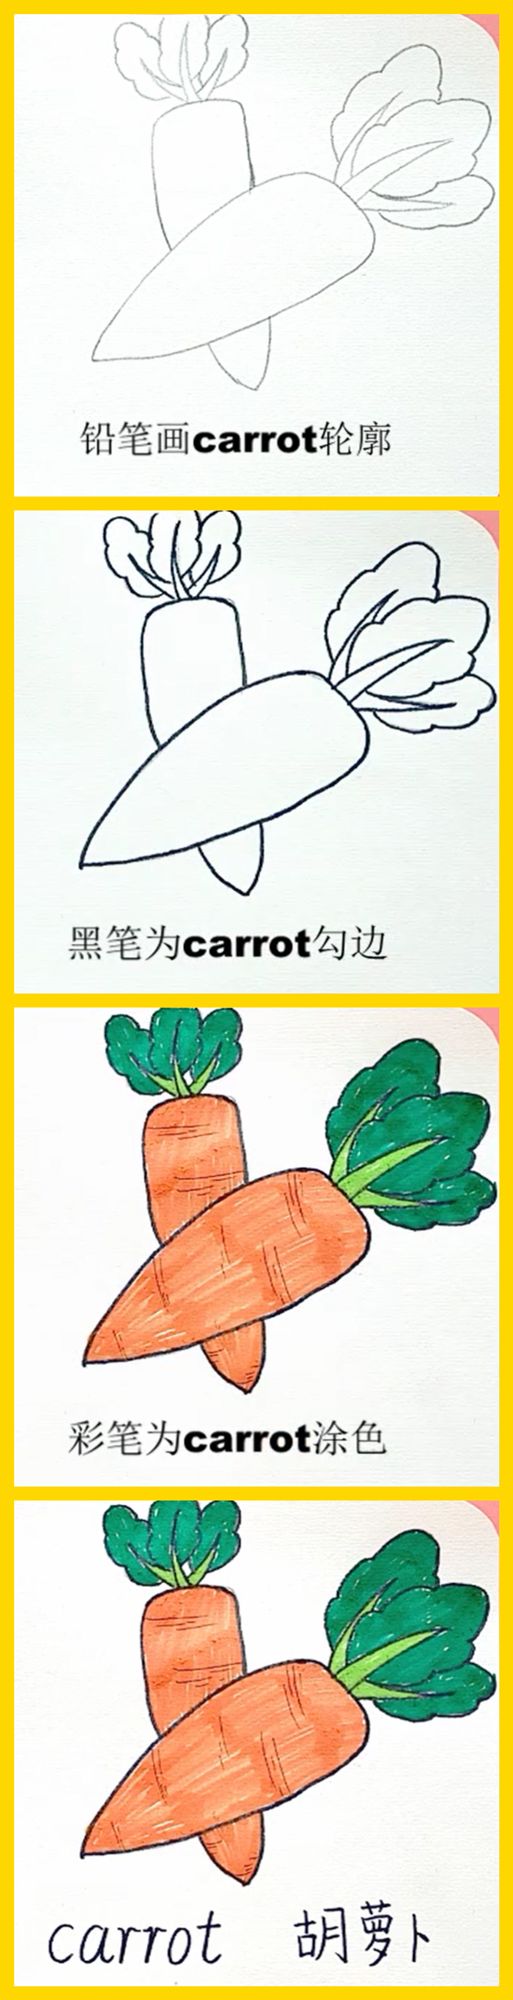 英语萌萌画carrot胡萝卜